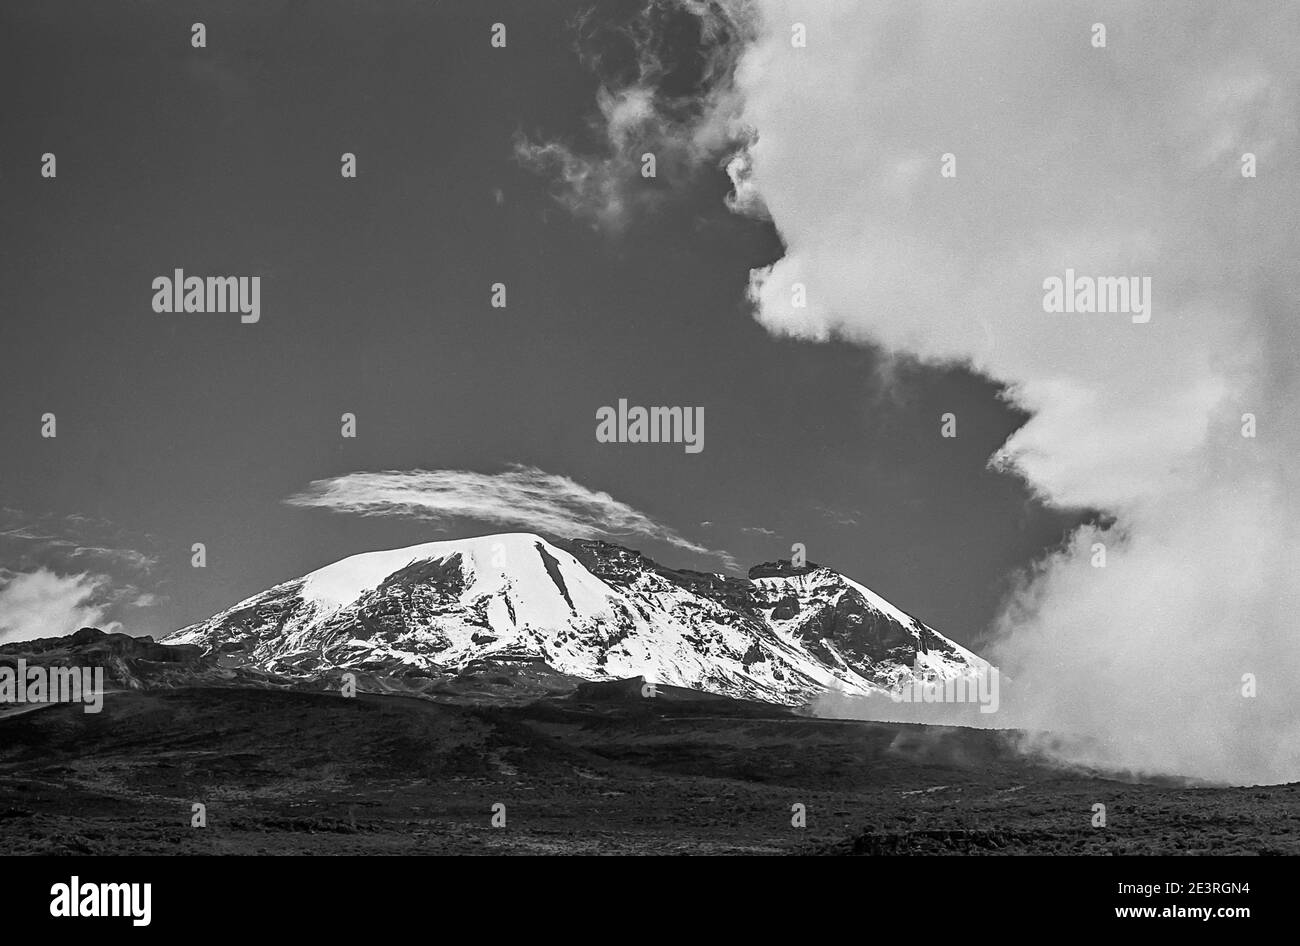 Tanzania. Esta es Kilimanjaro 19340ft en monocromo, la montaña más alta de África y el hemisferio sur, visto aquí desde la meseta de Shira mirando hacia la brecha del Muro de la brecha. Foto de stock